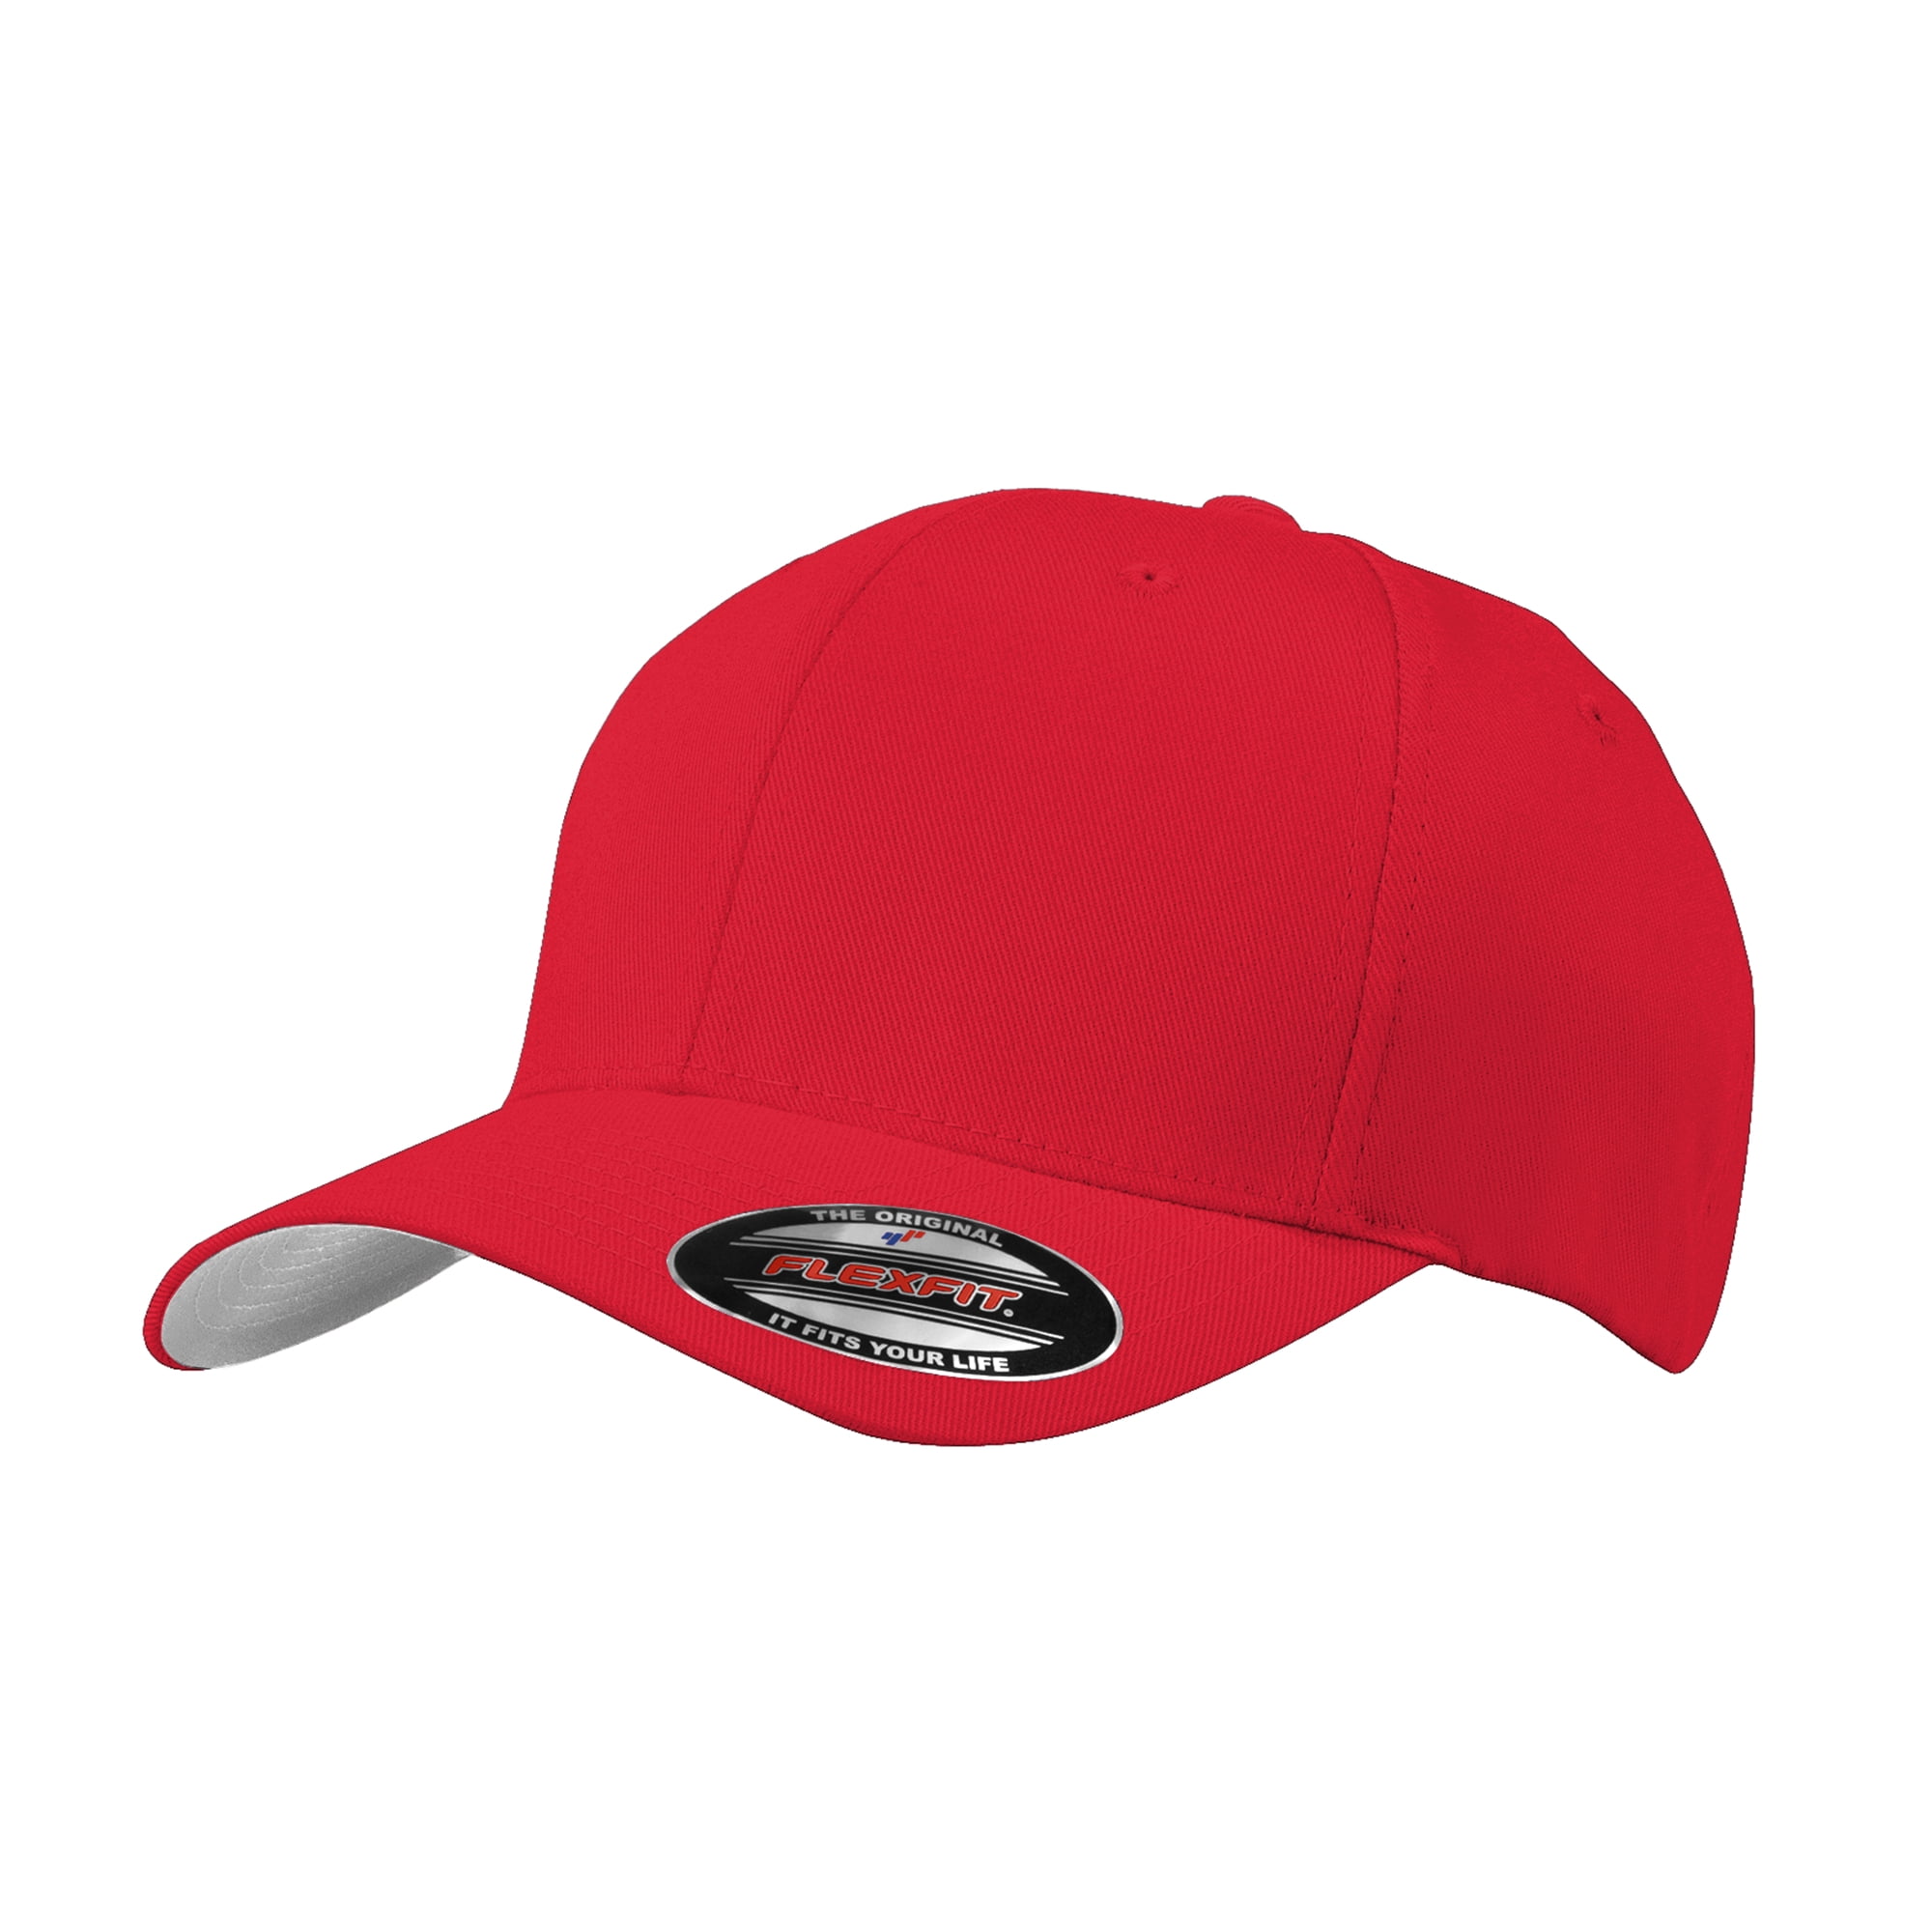 Men's Adult Flexfit Sun Cap Male Summer Hats Red S/M 